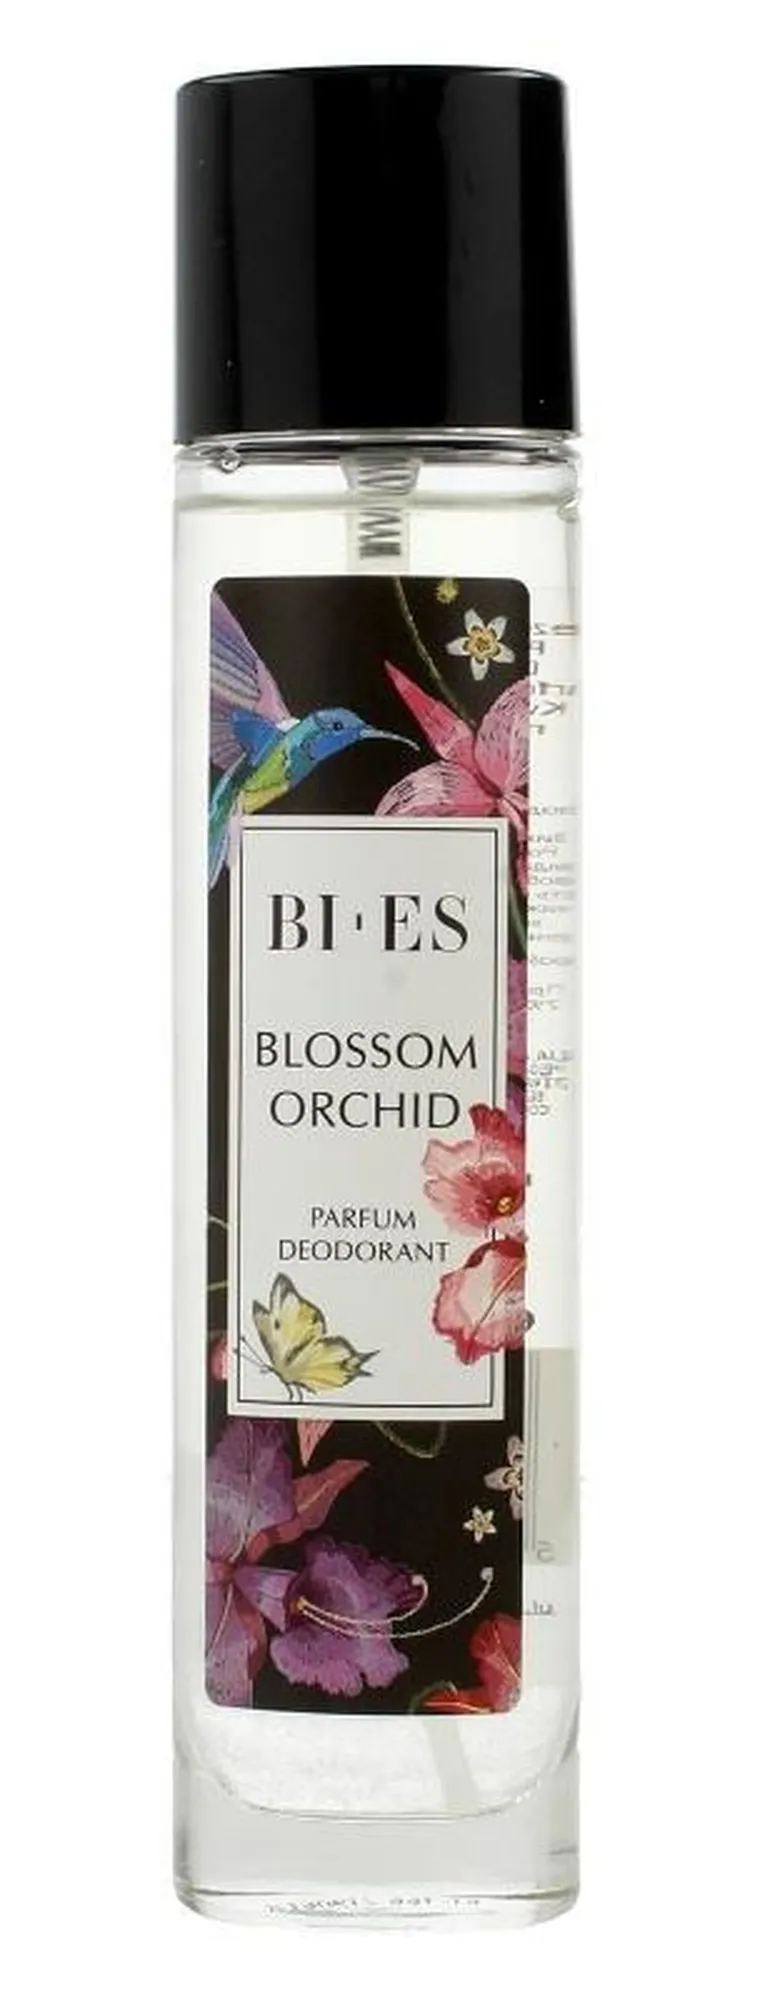 bi-es blossom orchid dezodorant w sprayu 75 ml   